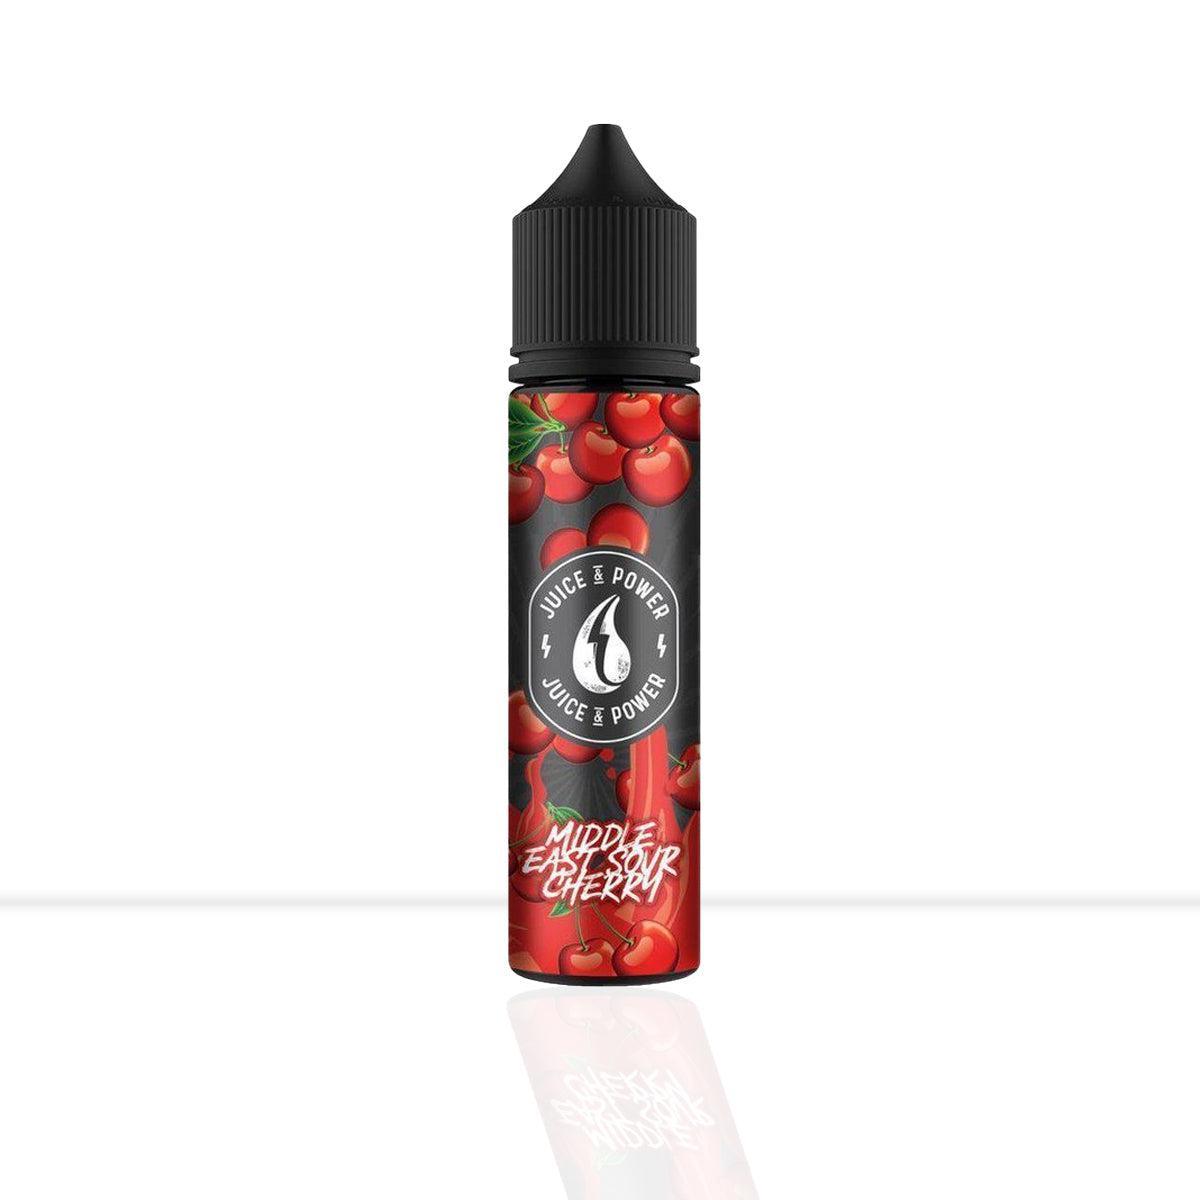 Middle East Sour Cherry Shortfill E-Liquid Juice ’N’ Power -